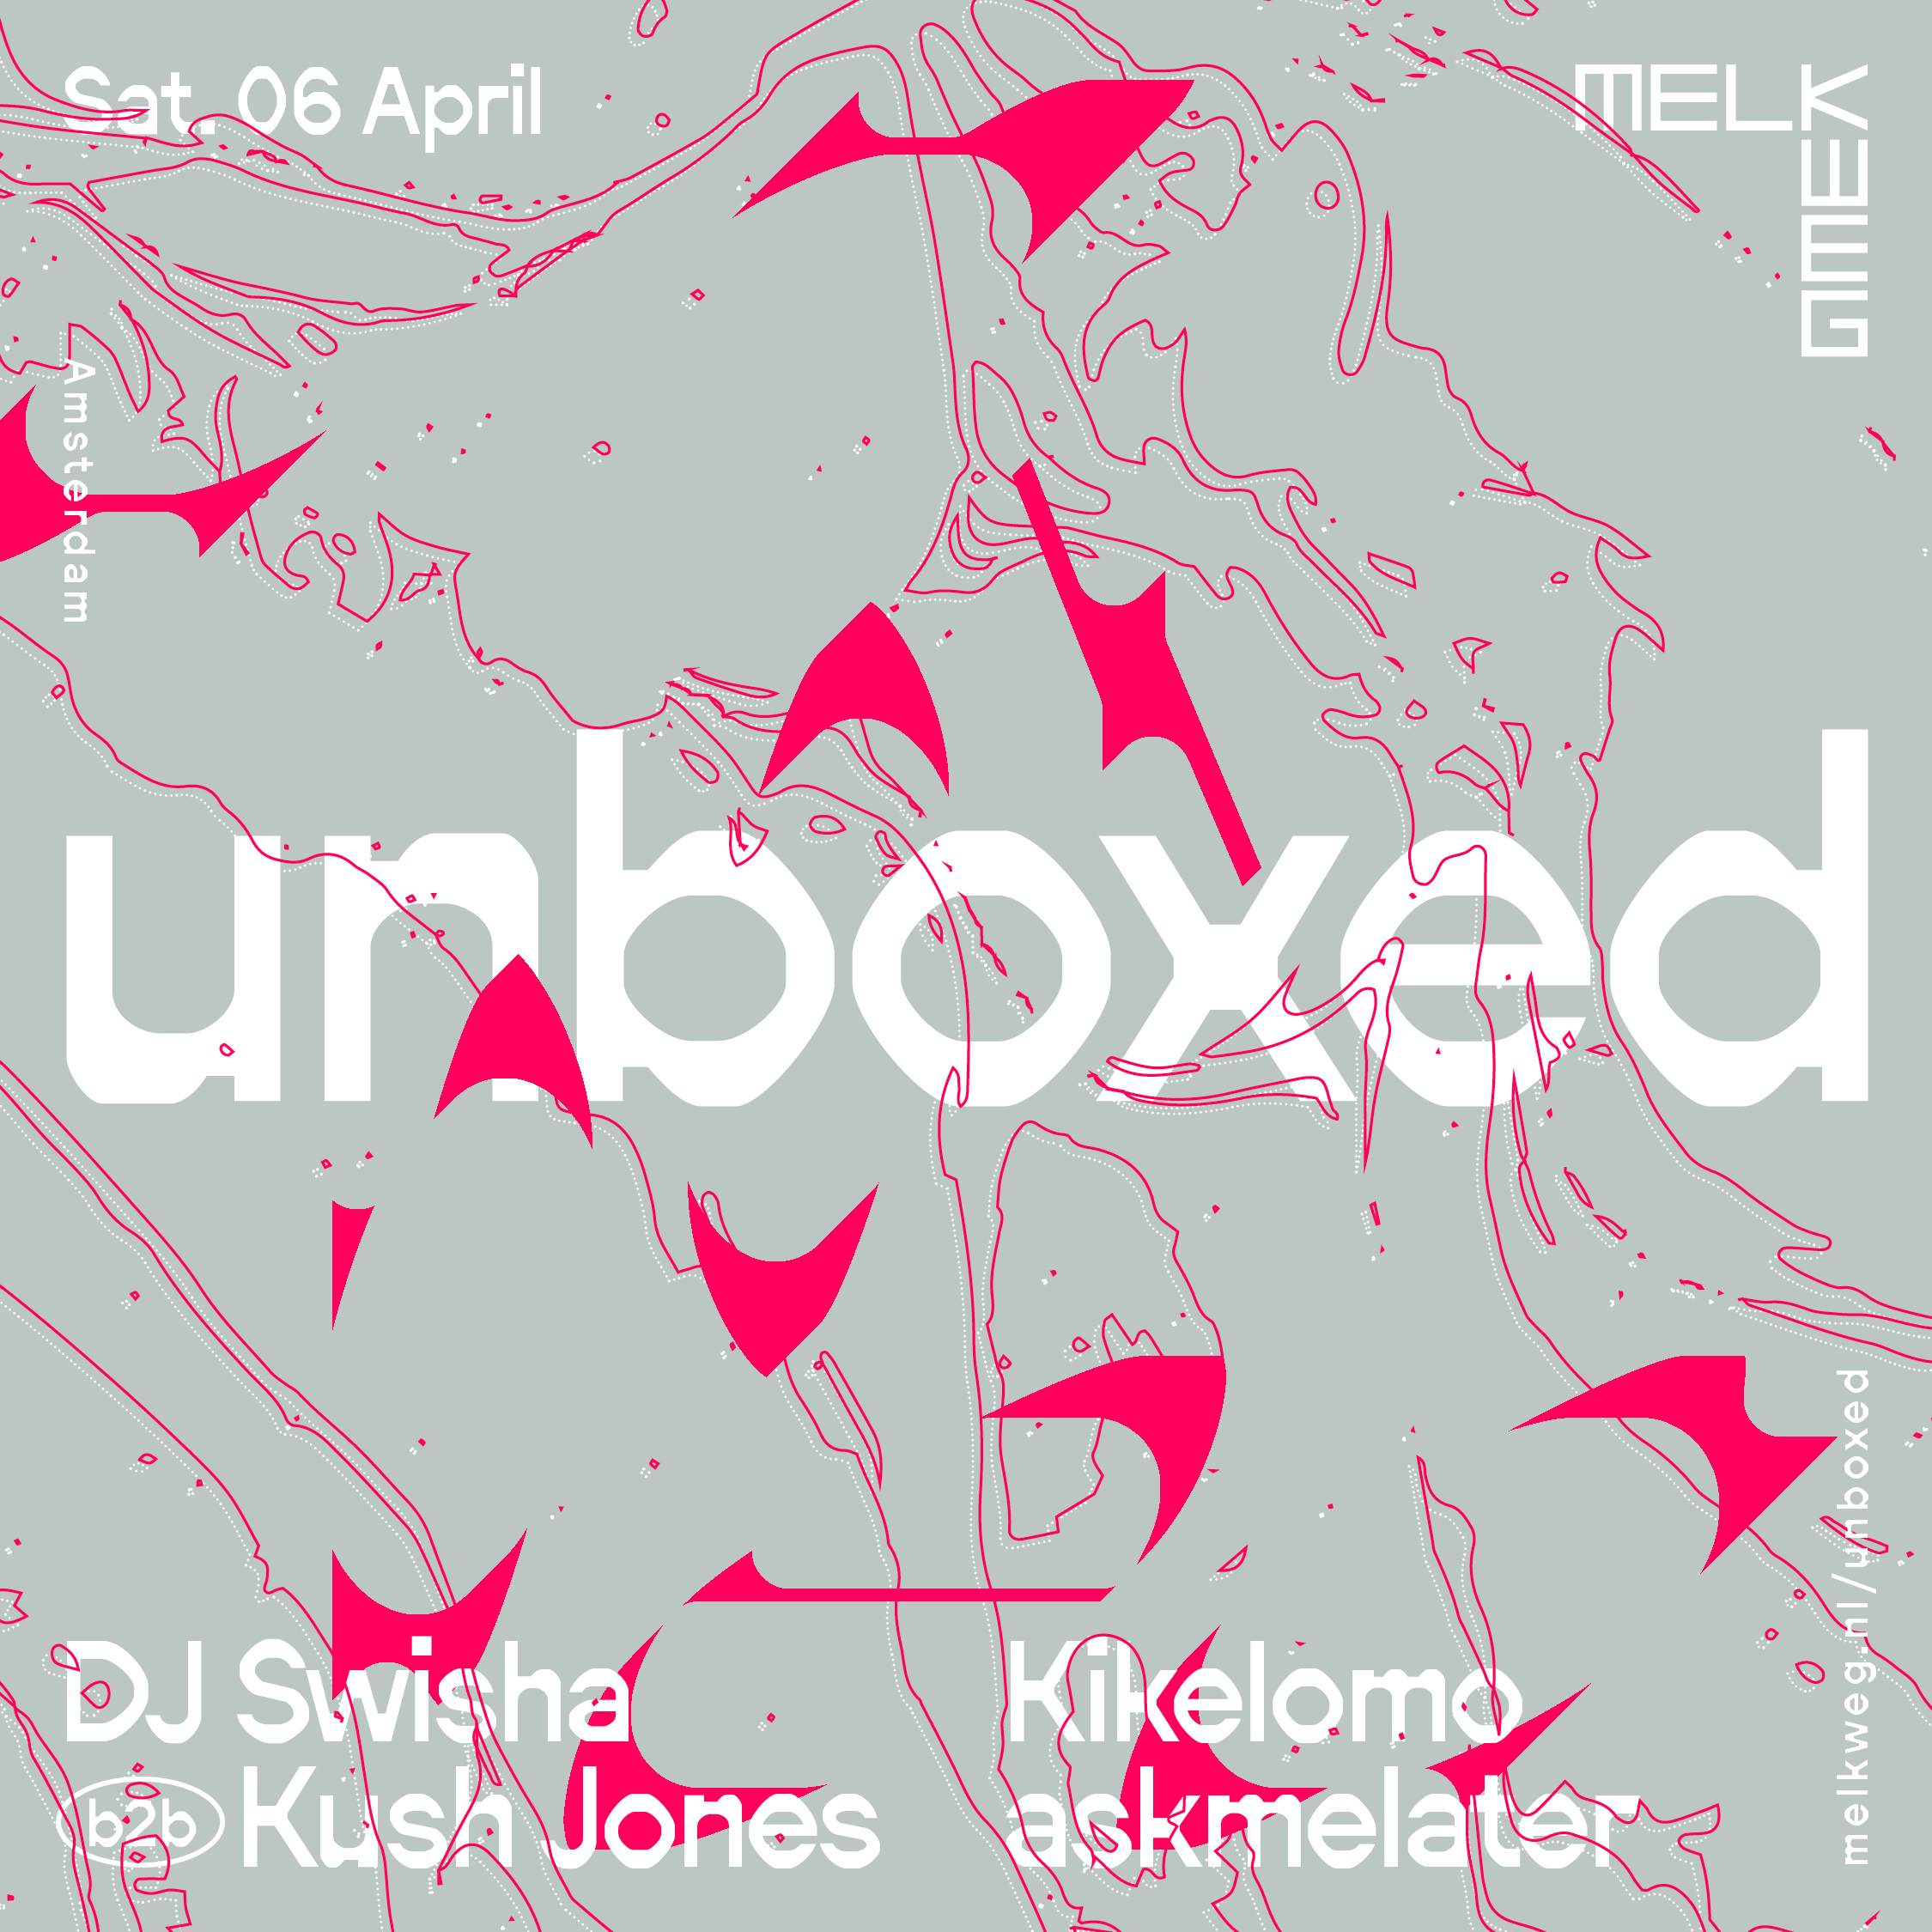 unboxed: DJ SWISHA / Kush Jones / Kikelomo / askmelater - フライヤー表